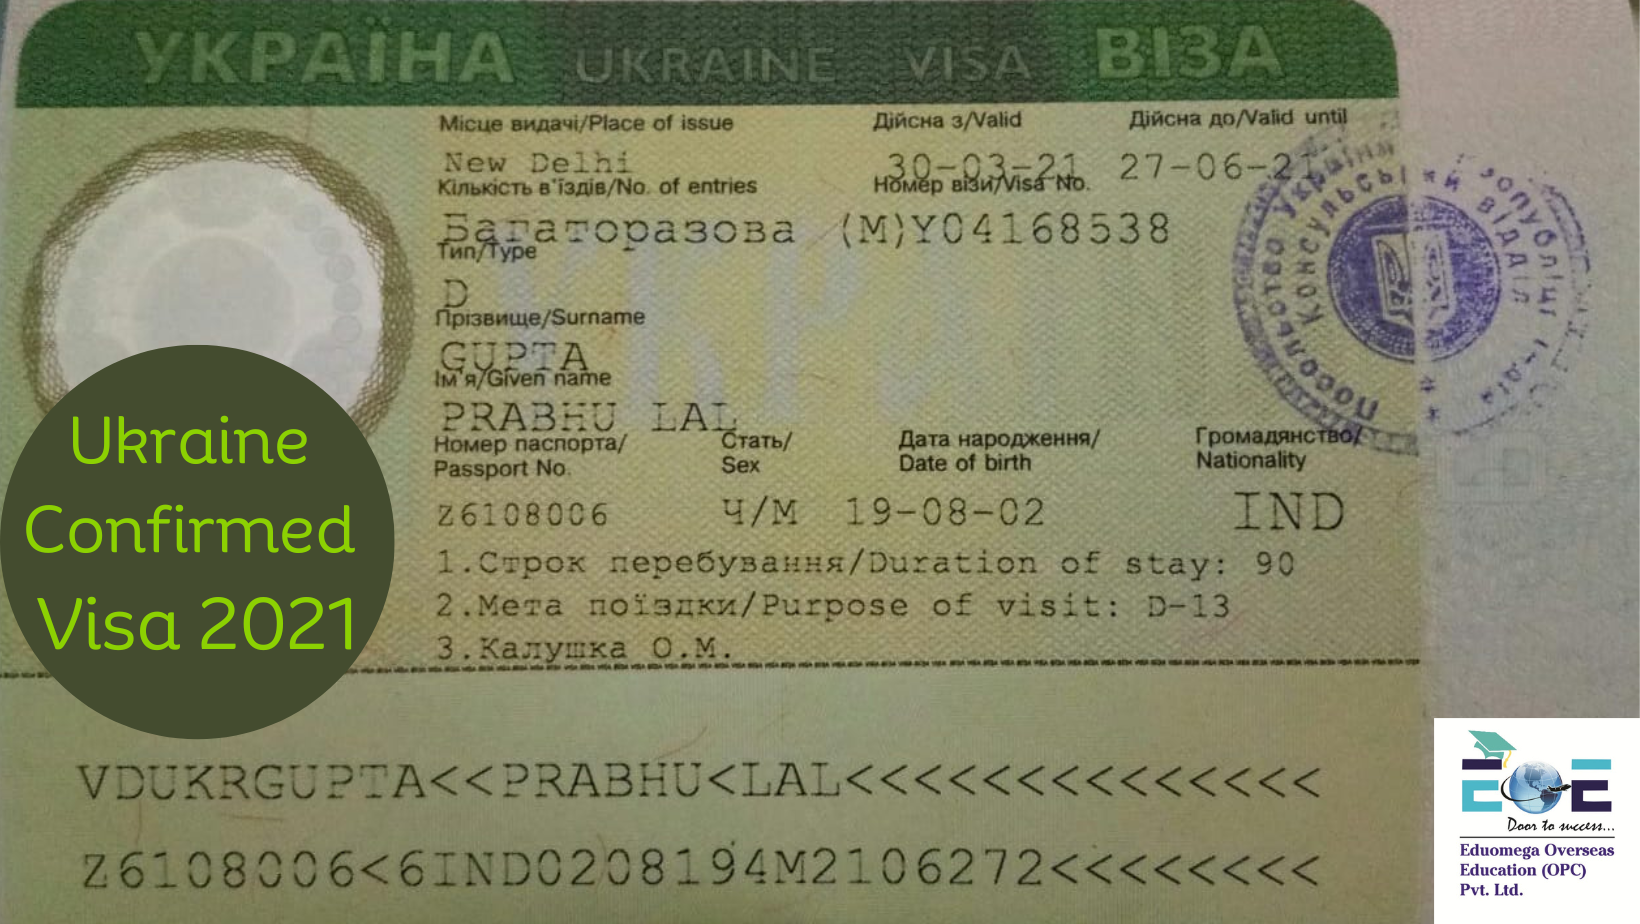 Ukraine Confirmed Visa 2021